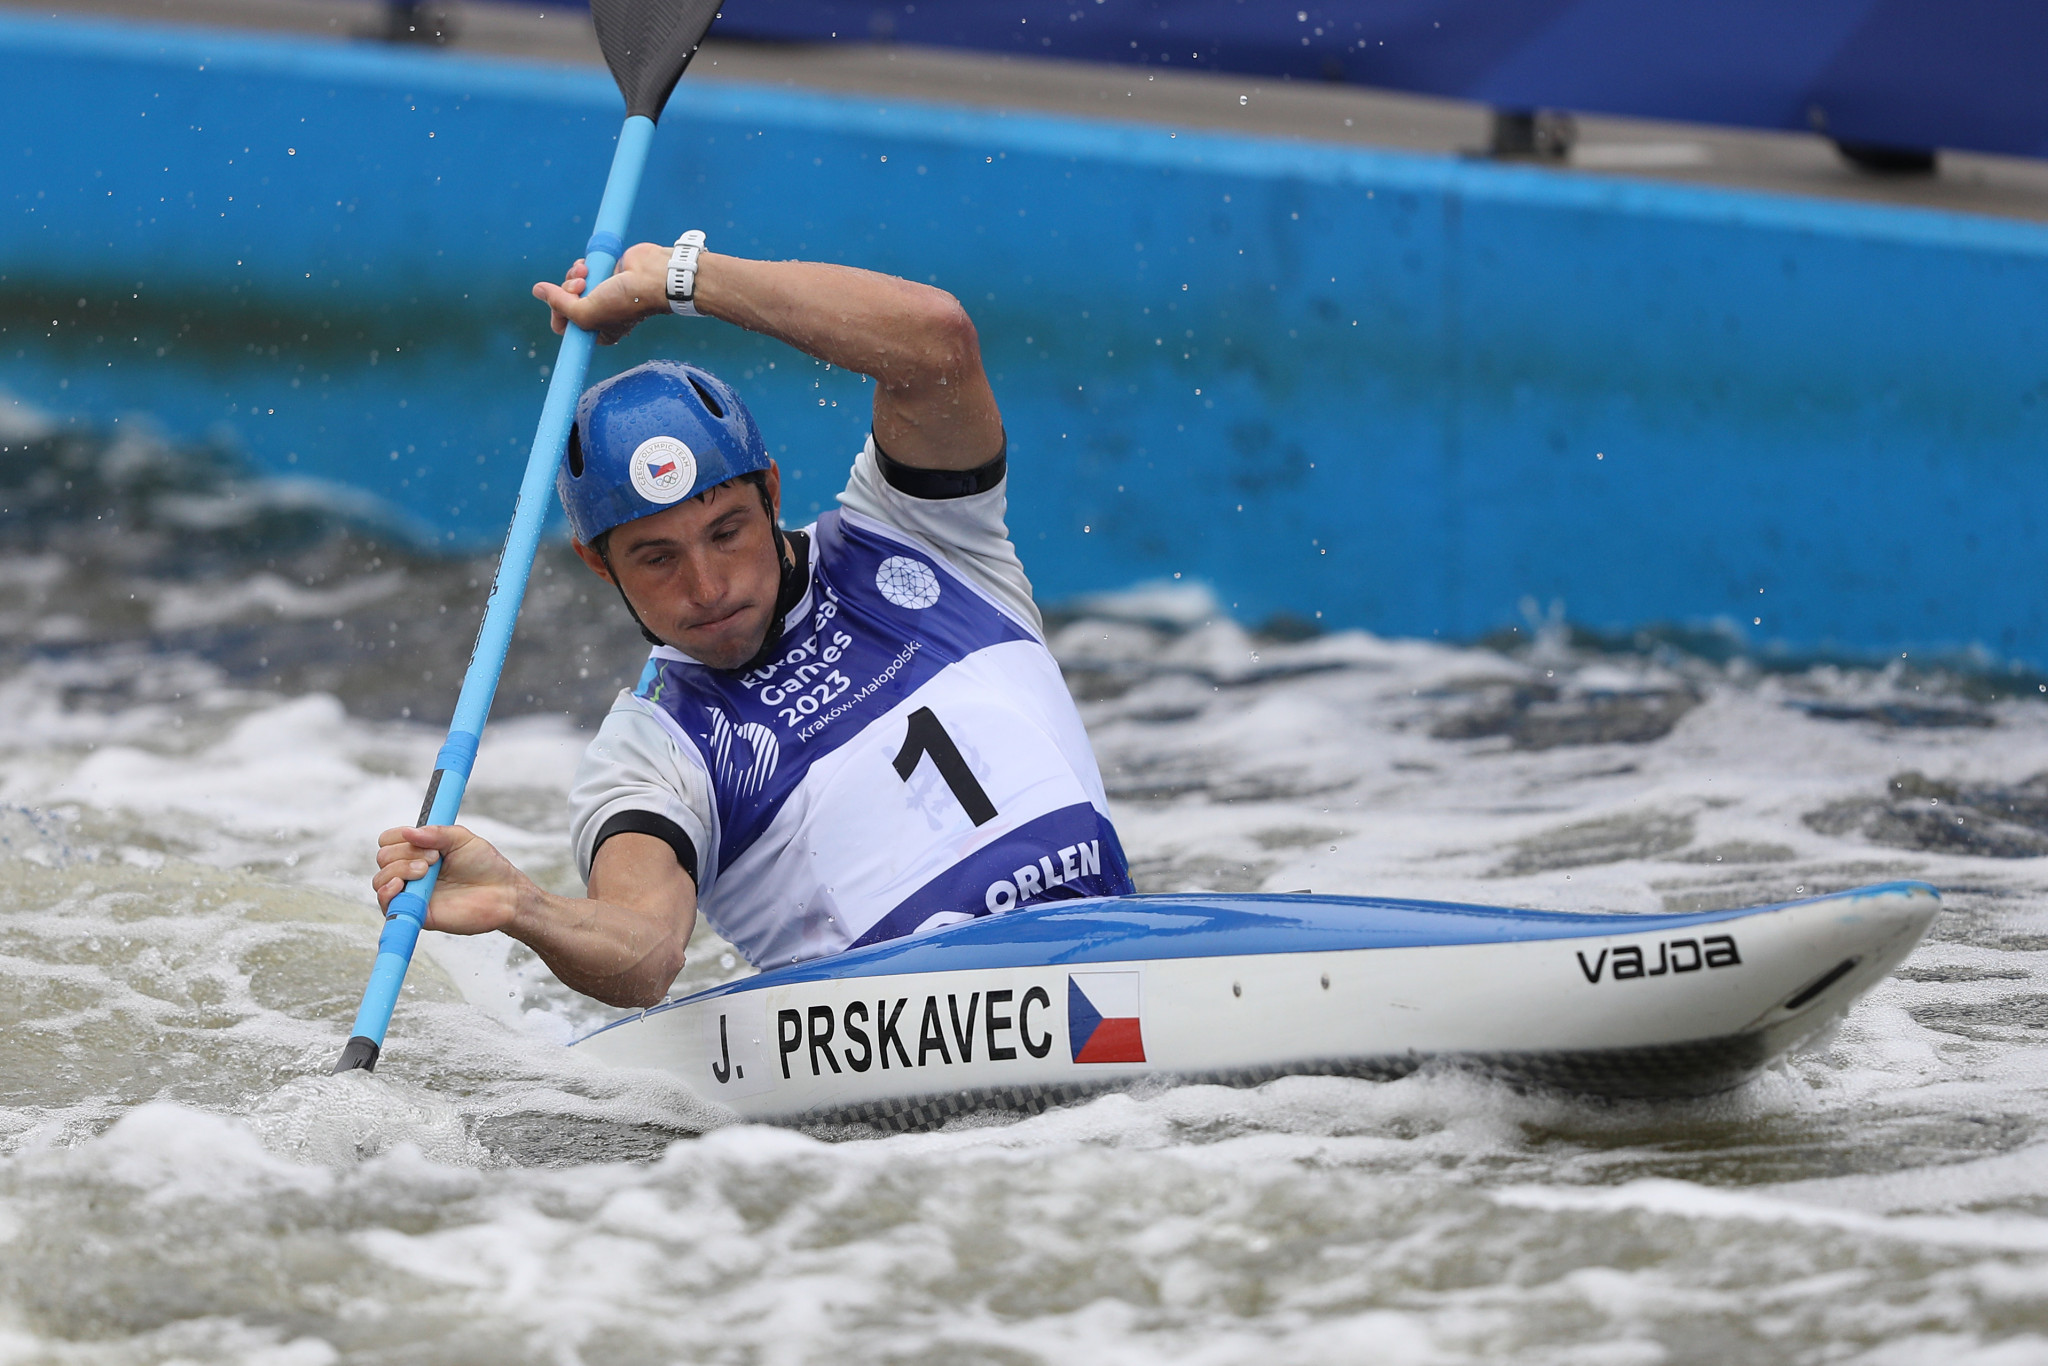 Olympic champion Jiří Prskavec of the Czech Republic won the men's K1 canoe slalom event ©Kraków-Malopolska 2023